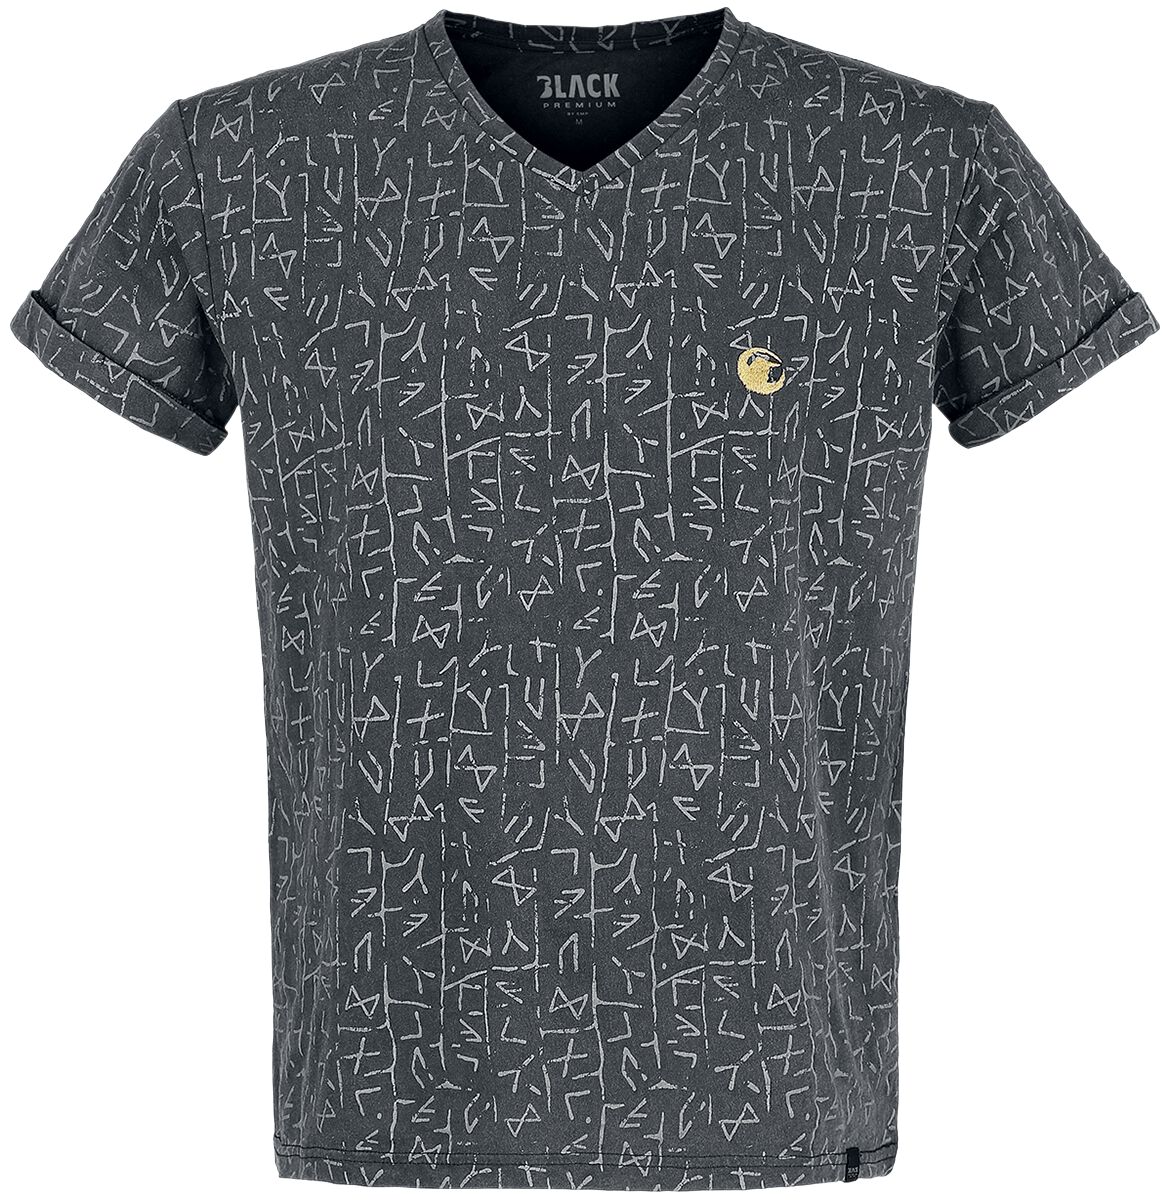 Black Premium by EMP T-Shirt - T-Shirt mit Runenprint - S bis 5XL - für Männer - Größe 5XL - grau